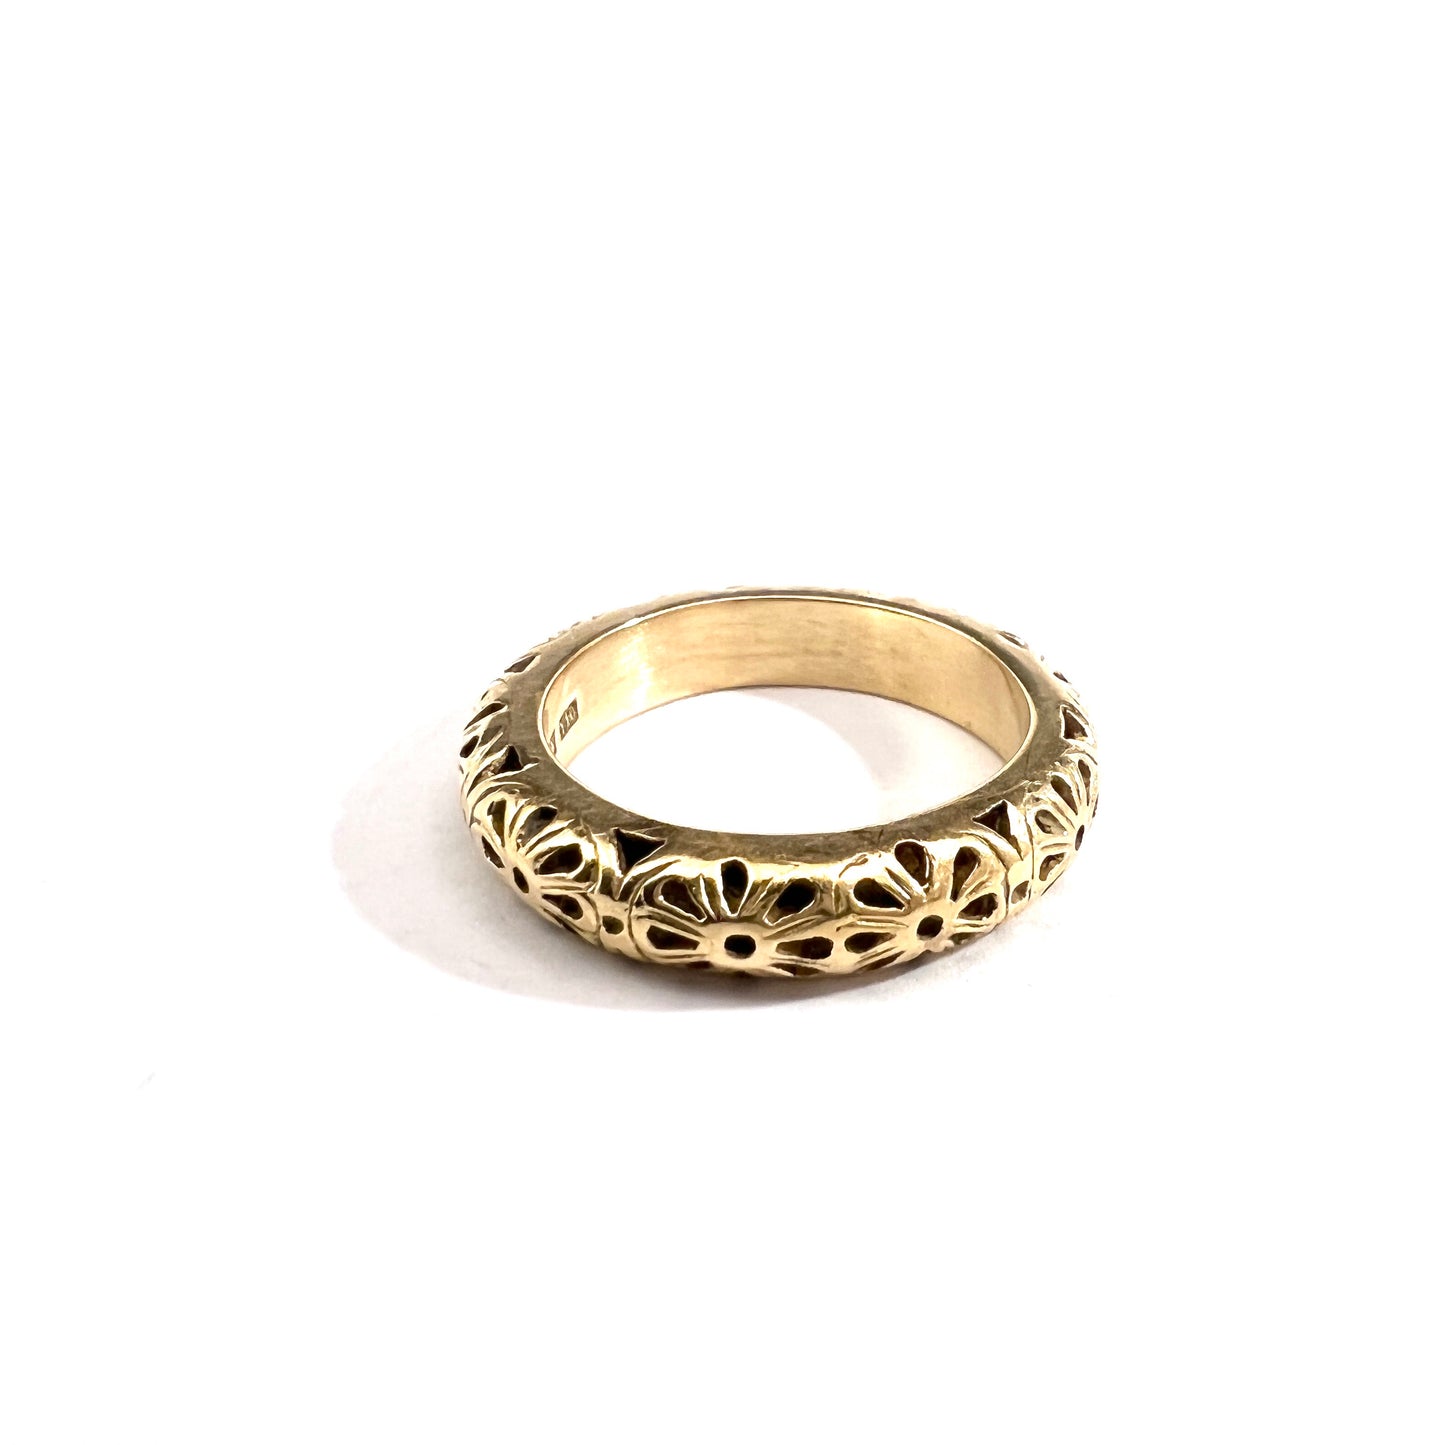 Bengt Hallberg, Sweden. Vintage Medieval Copy 18k Gold Ring. Original from 1537 A.D.